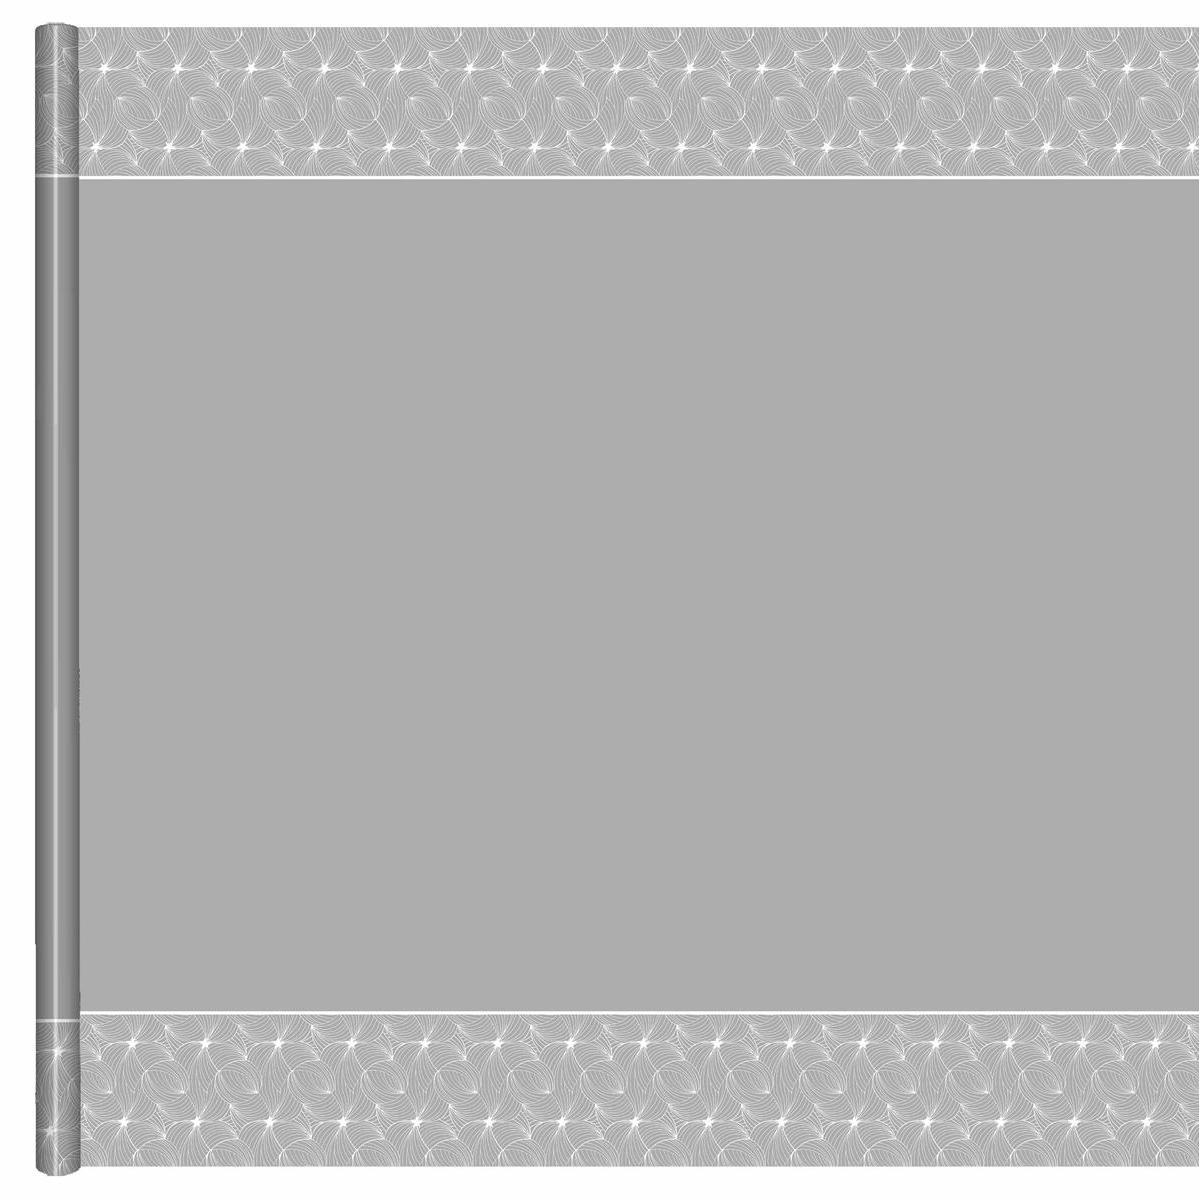 Nappe - Papier - 6 x 1,18 m - Blanc et gris